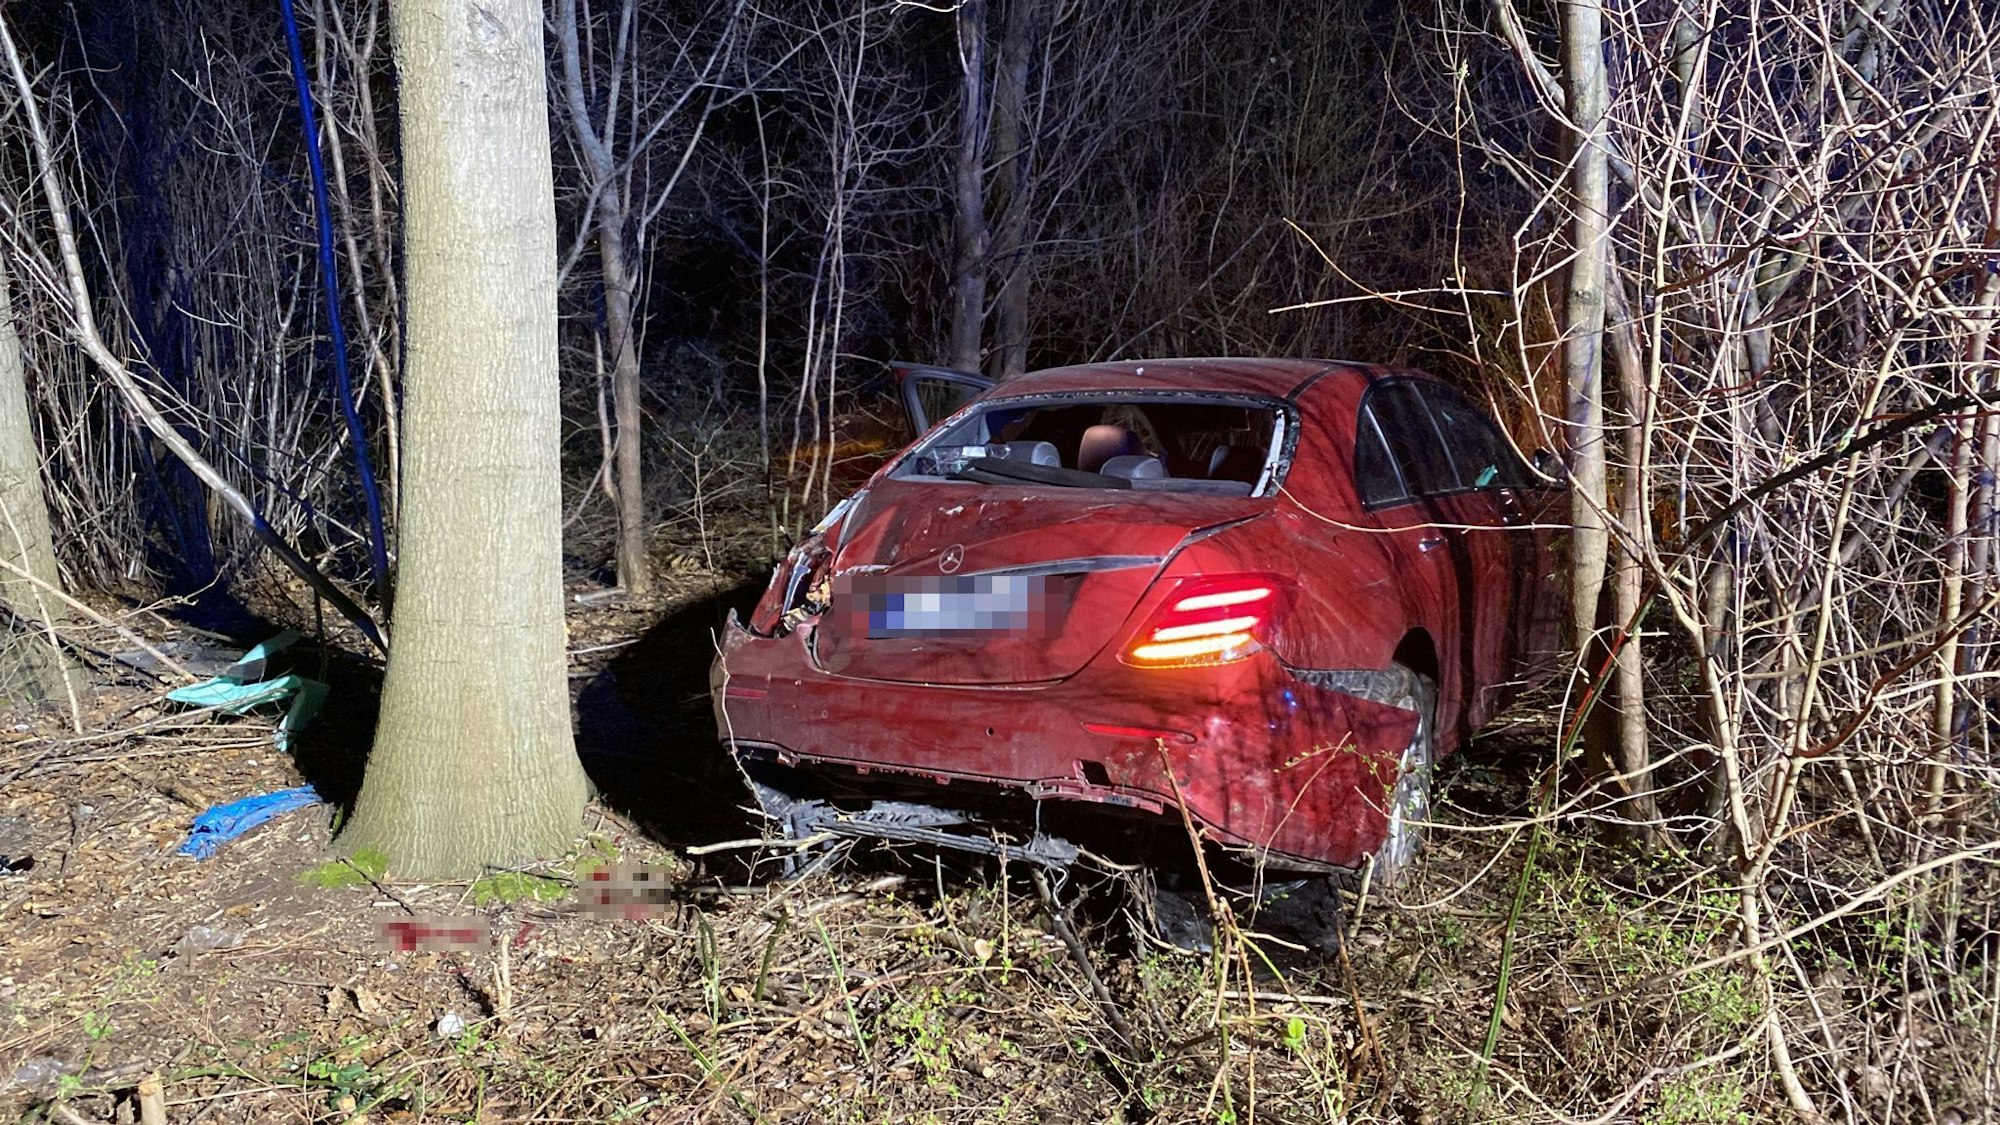 Ein rotes Auto steht zwischen Bäumen und Sträuchern. Der Wagen hat erhebliche Schäden und kaputte Scheiben.